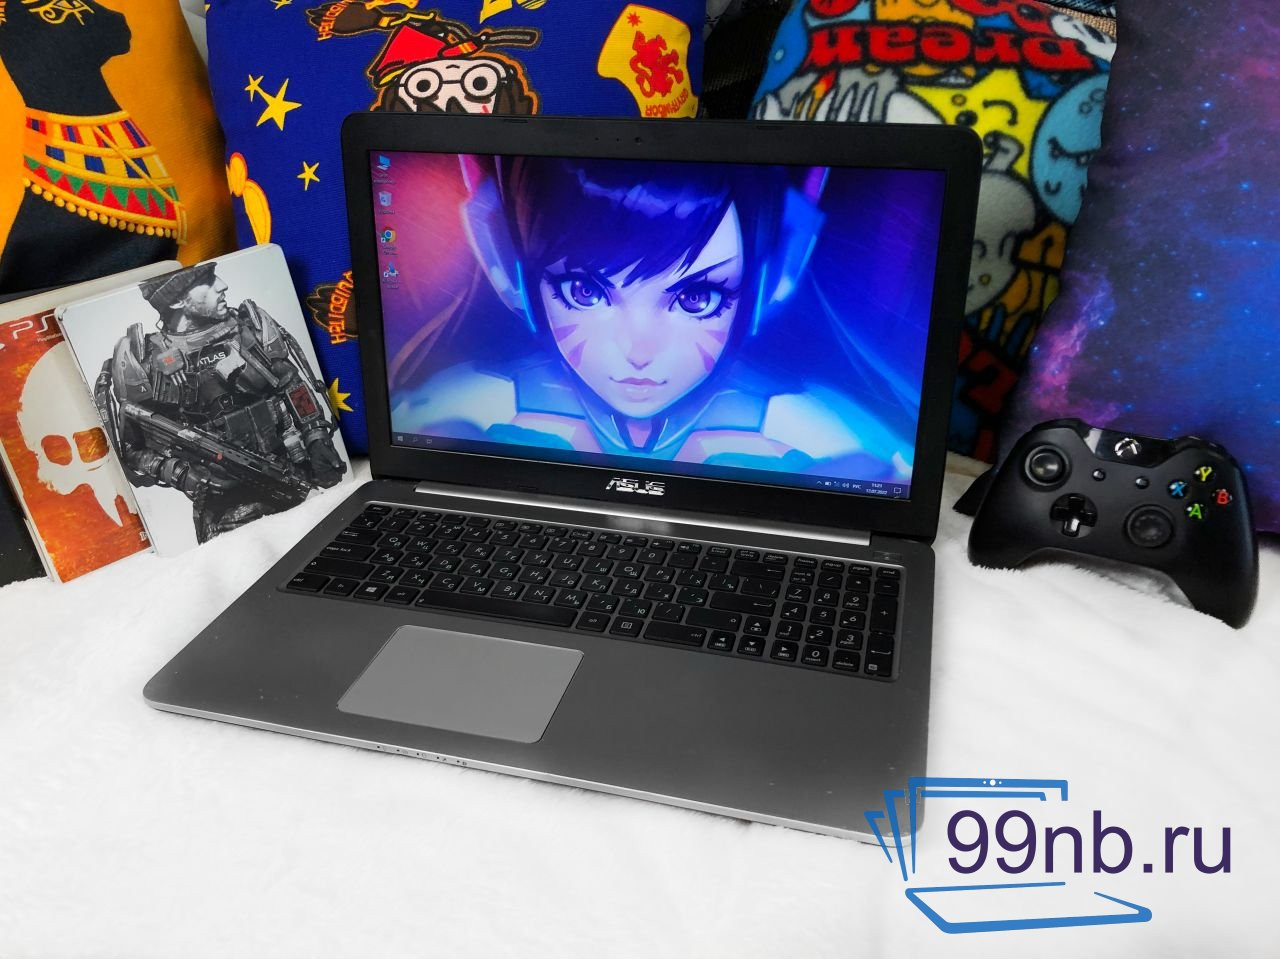  Игровой ноутбук ASUS Intel+Geforce